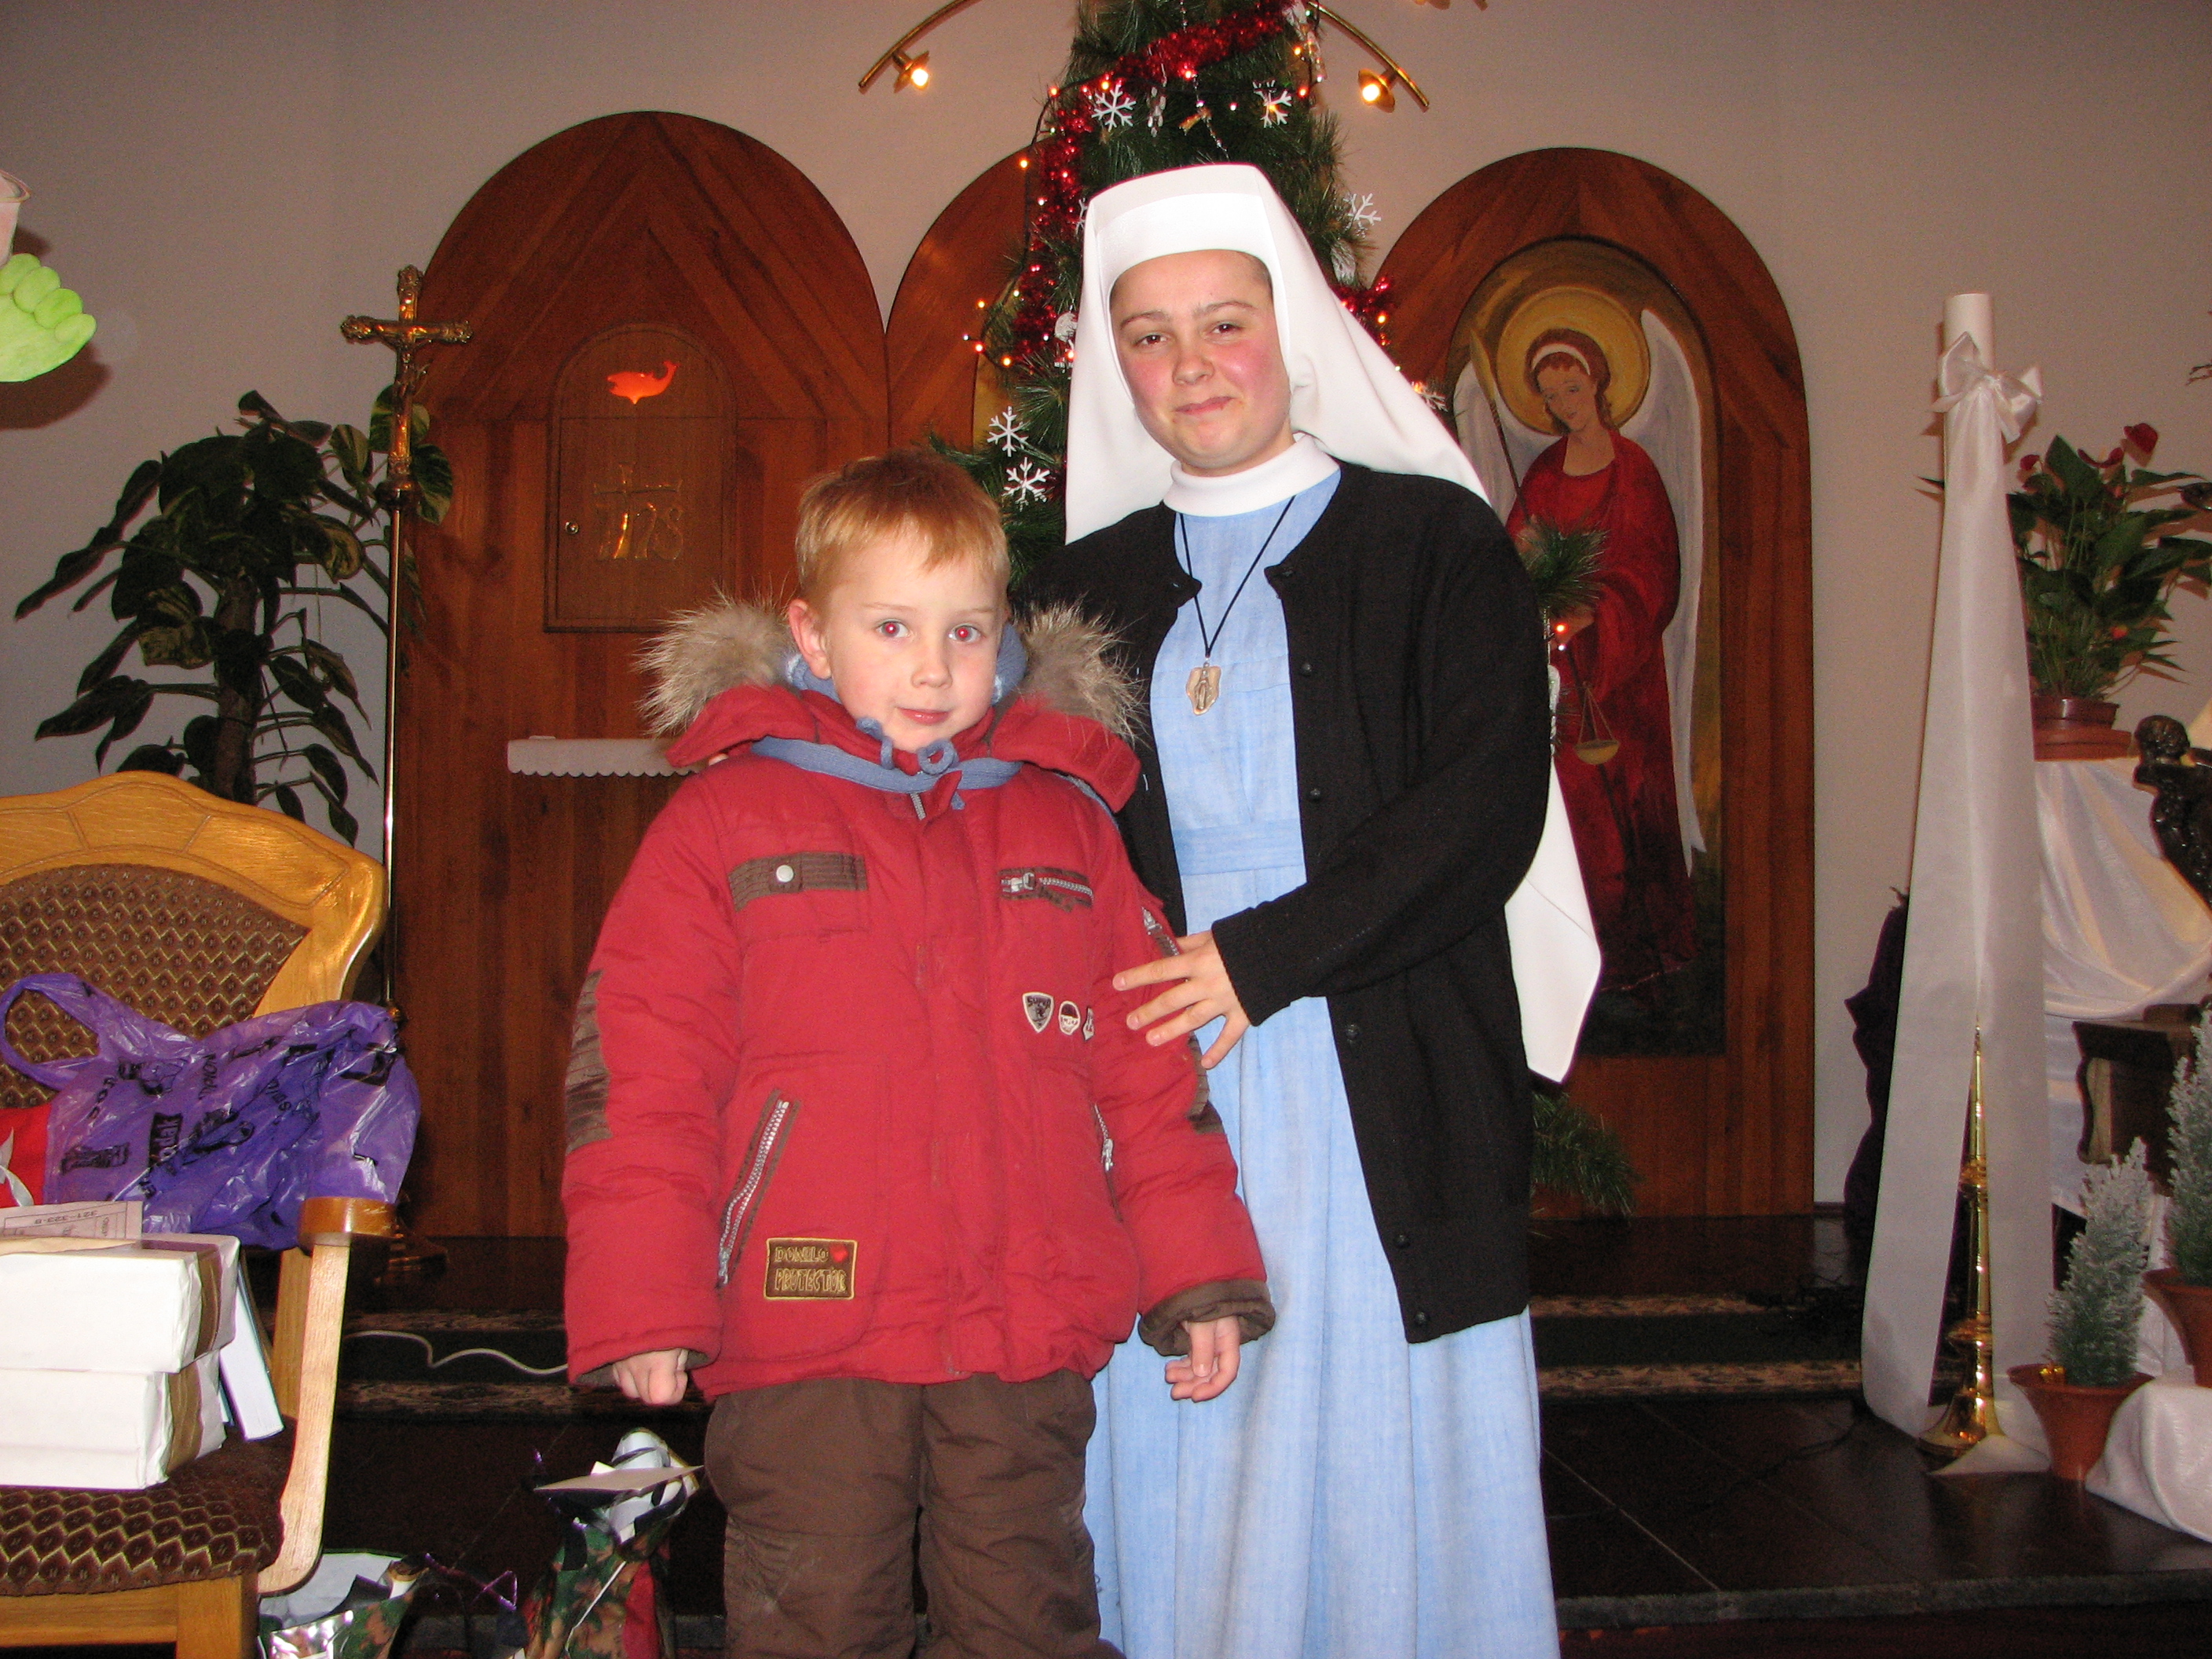 A Catholic nun with a small boy